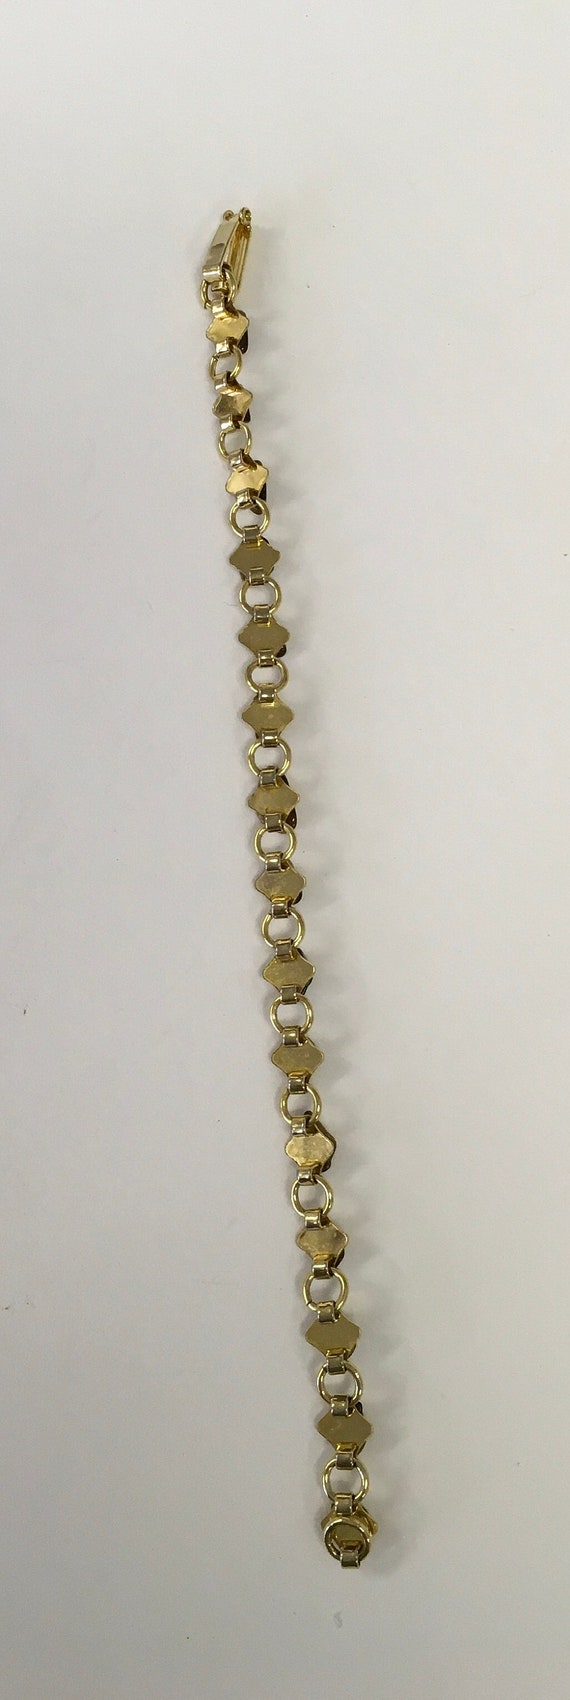 Tiger eye chips in link bracelet - image 3